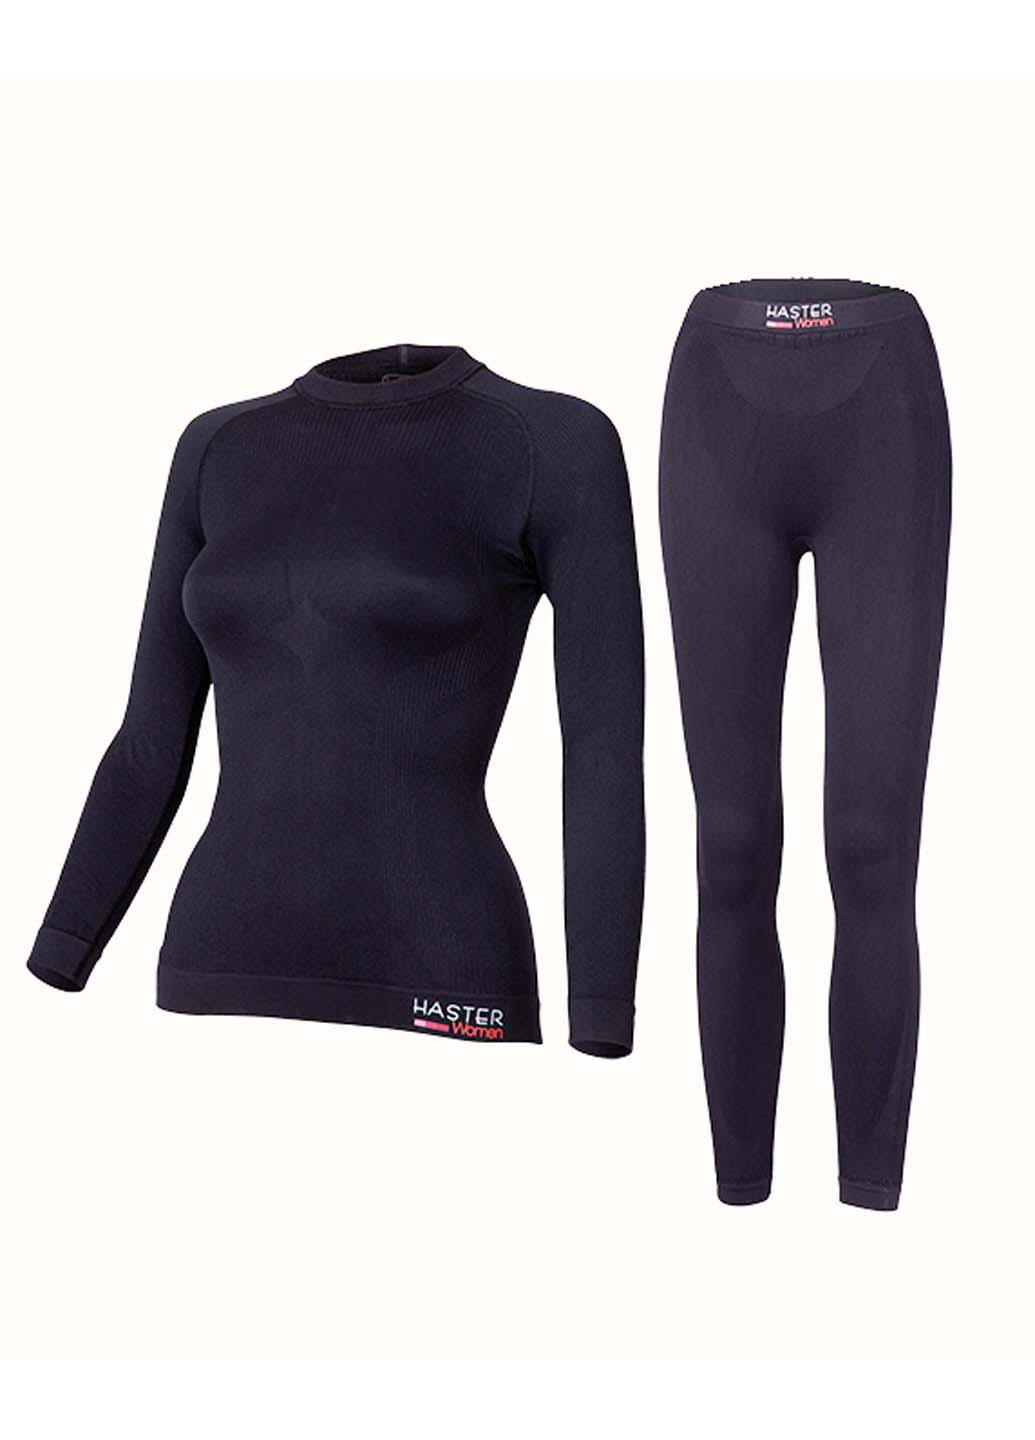 Комплект термобелья Hanna Style свитер + брюки однотонный чёрный спортивный полиамид